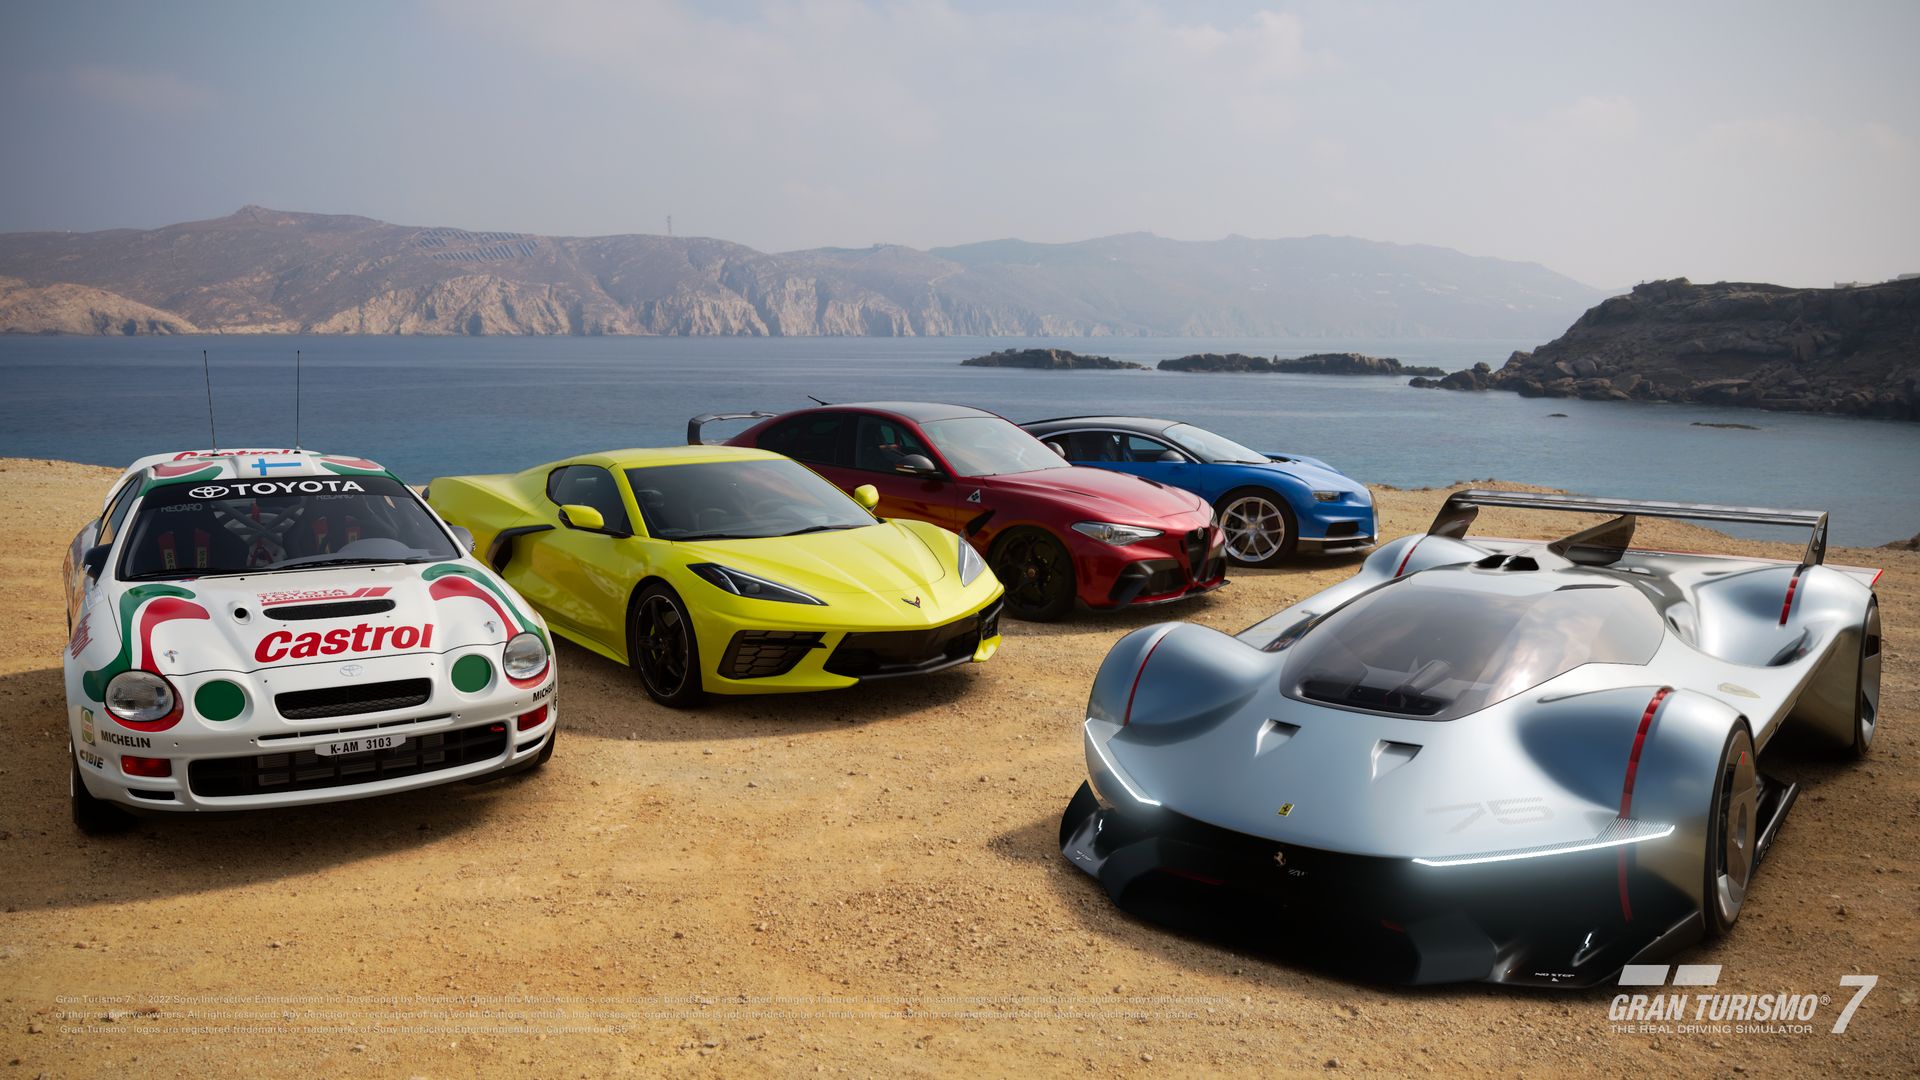 Voici les 5 nouvelles voitures de Gran Turismo 7 avec la mise à jour de  décembre 2022 !